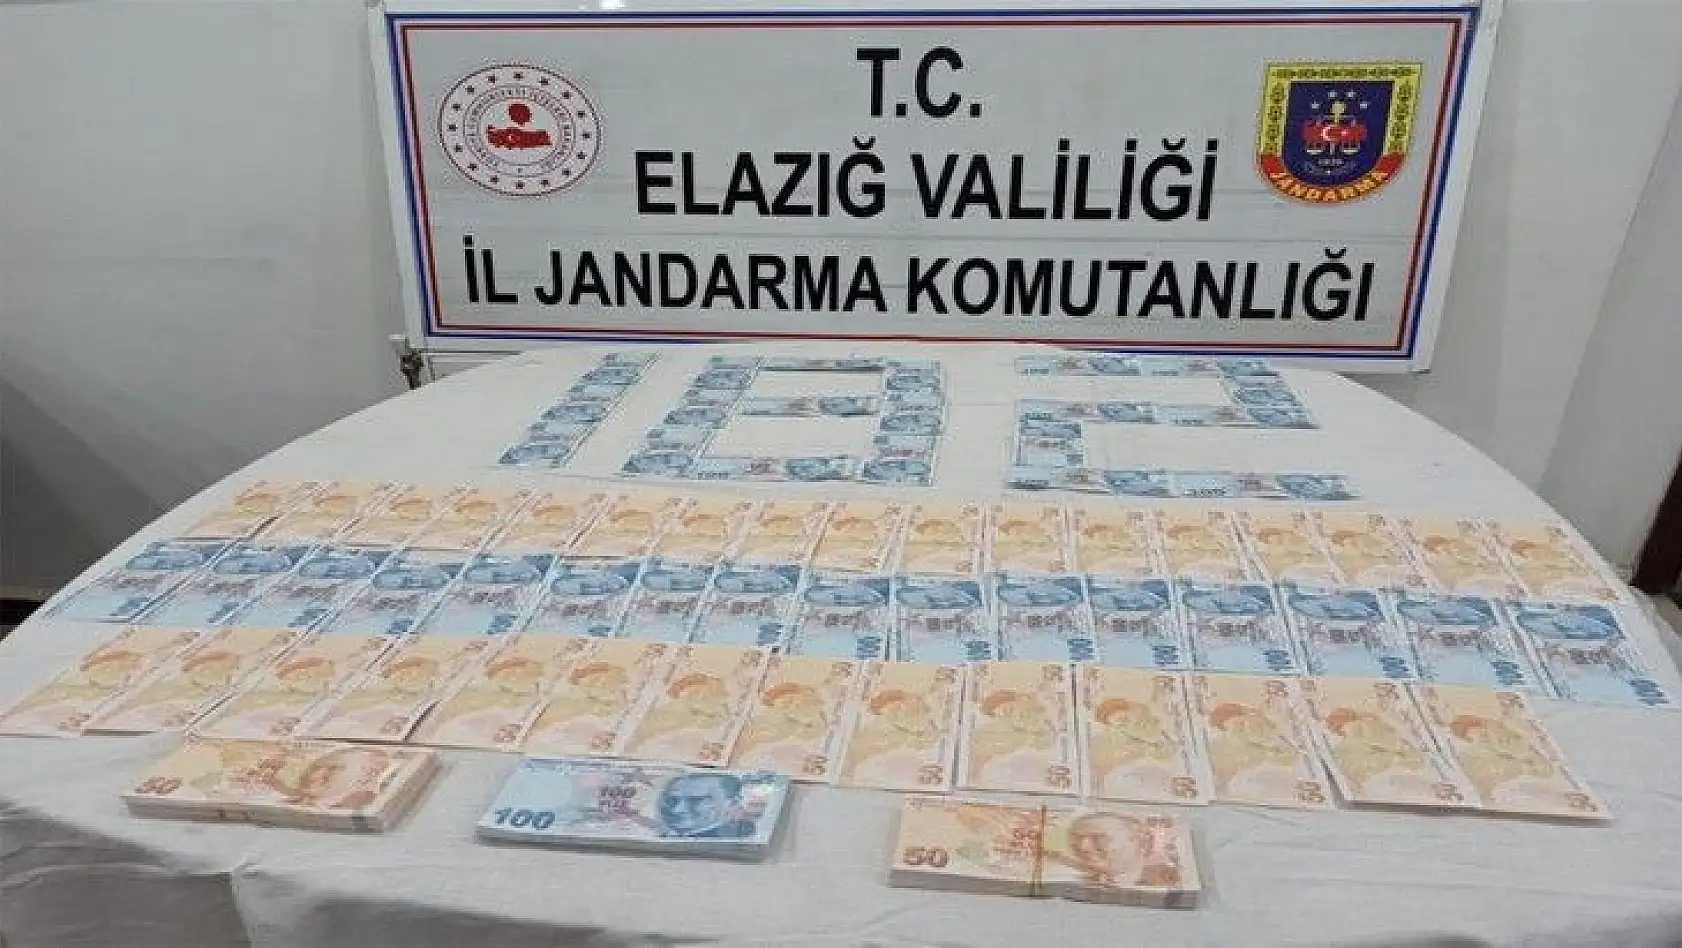 İstanbul'dan Elazığ'a 26 bin TL sahte para getiren şüpheli yakalandı